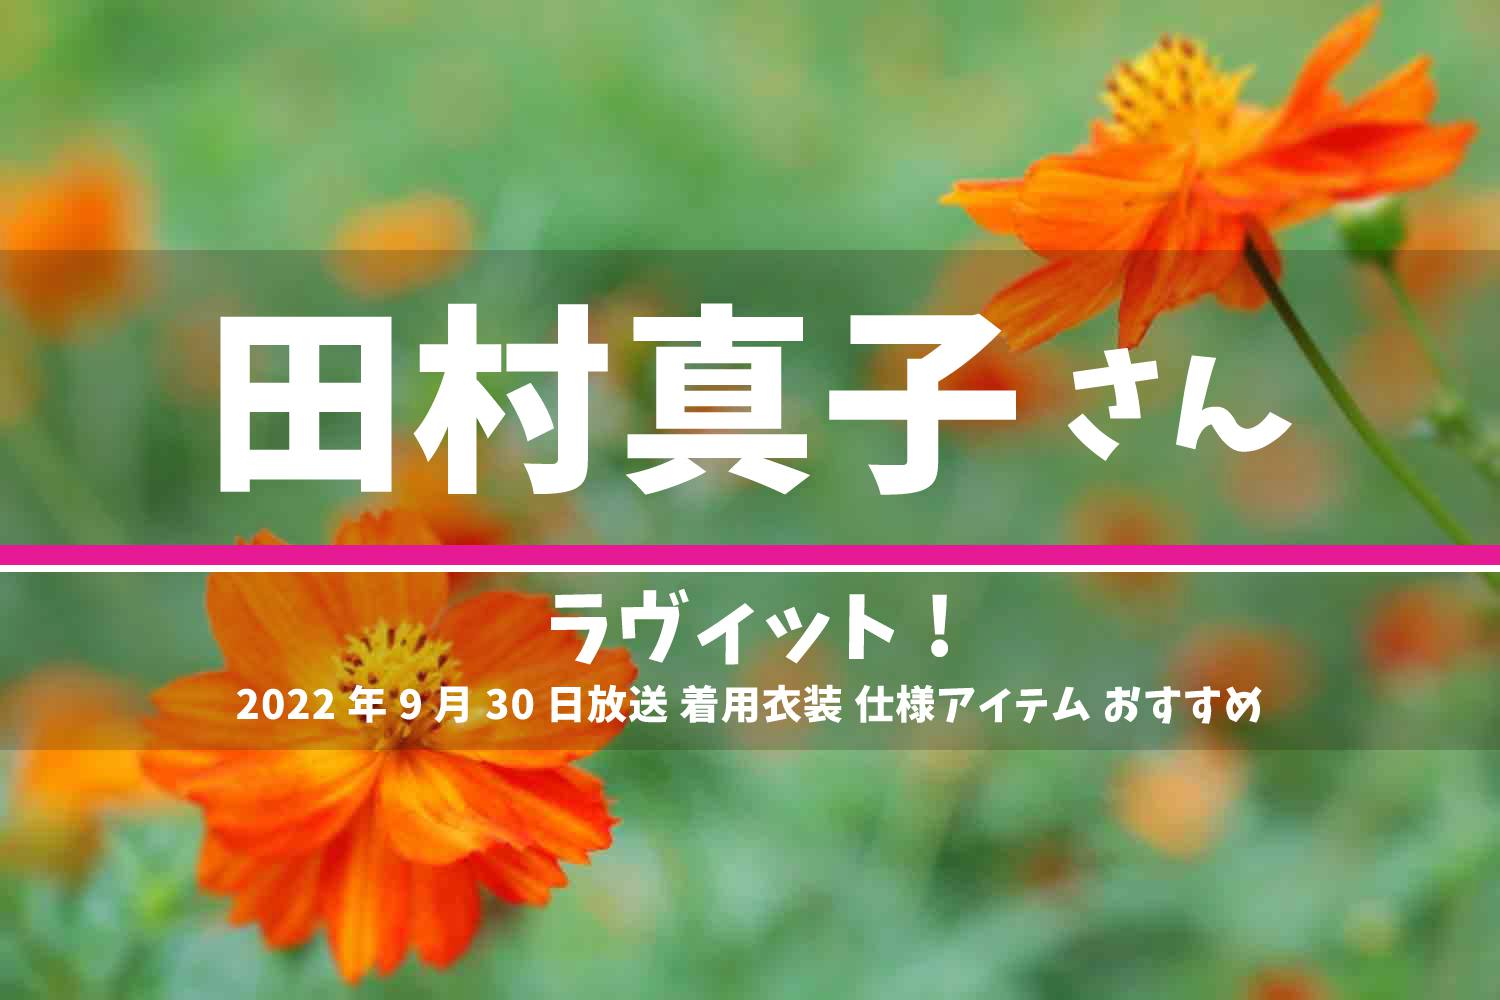 ラヴィット! 田村真子 番組 衣装 2022年9月30日放送